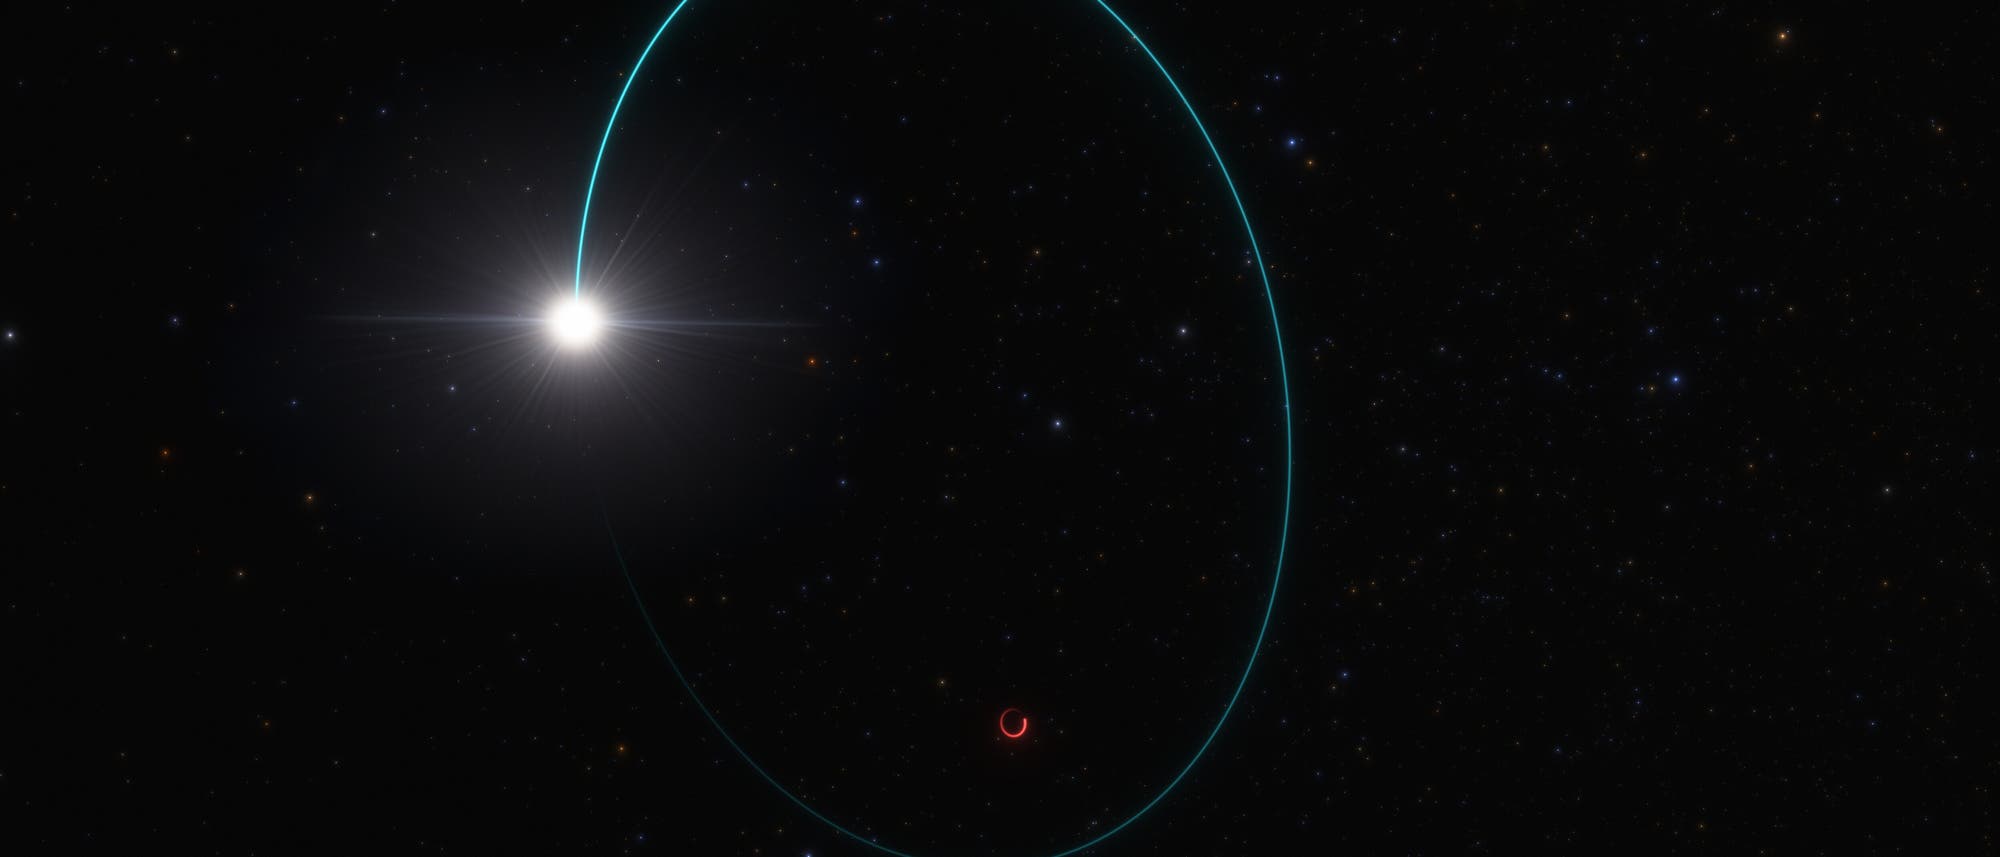 Telescopio espacial Gaia: el agujero negro estelar más masivo